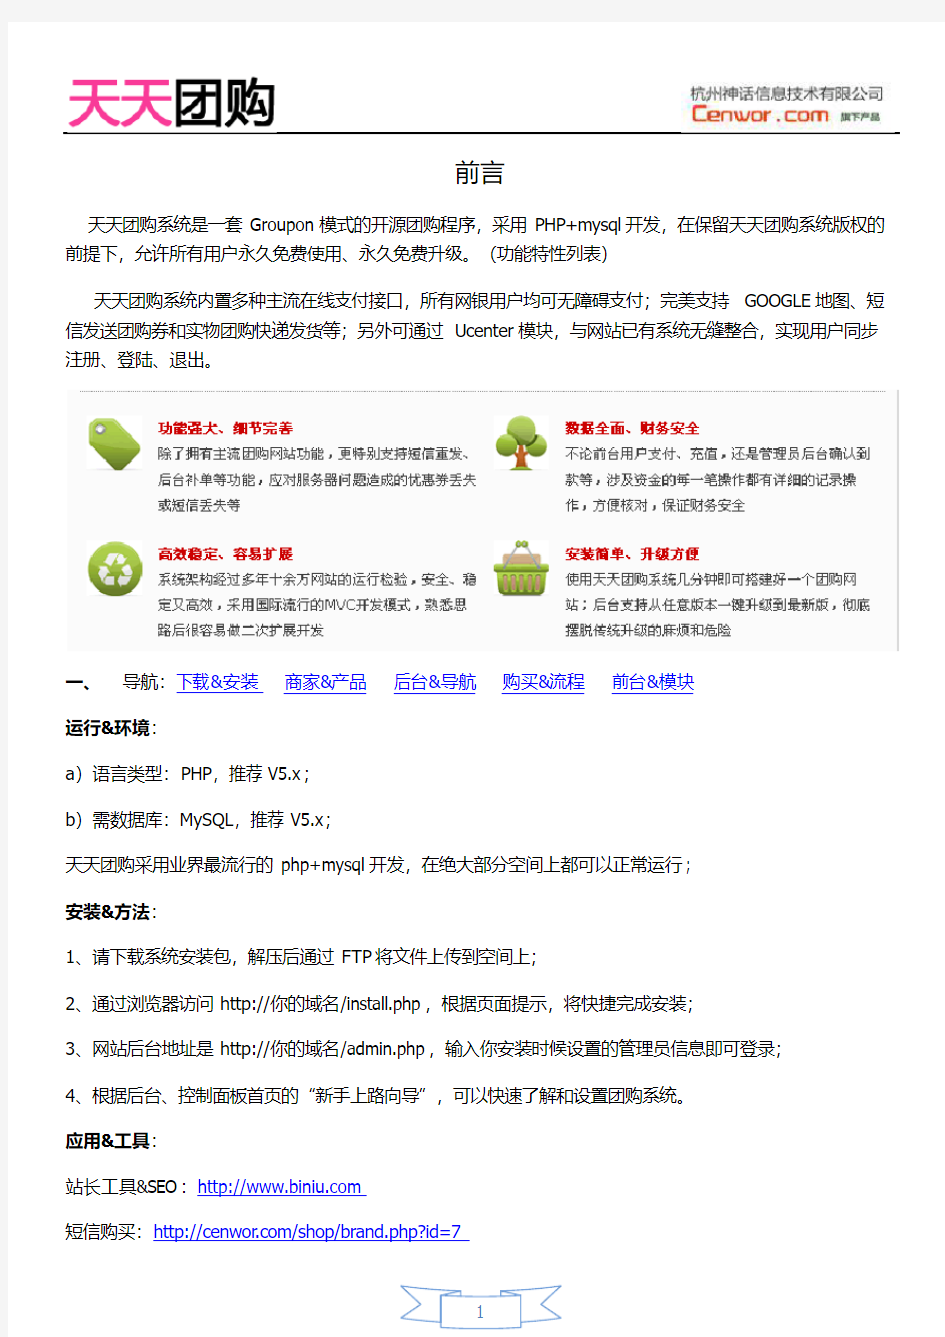 天天团购系统1.3版本产品使用手册(修正版)